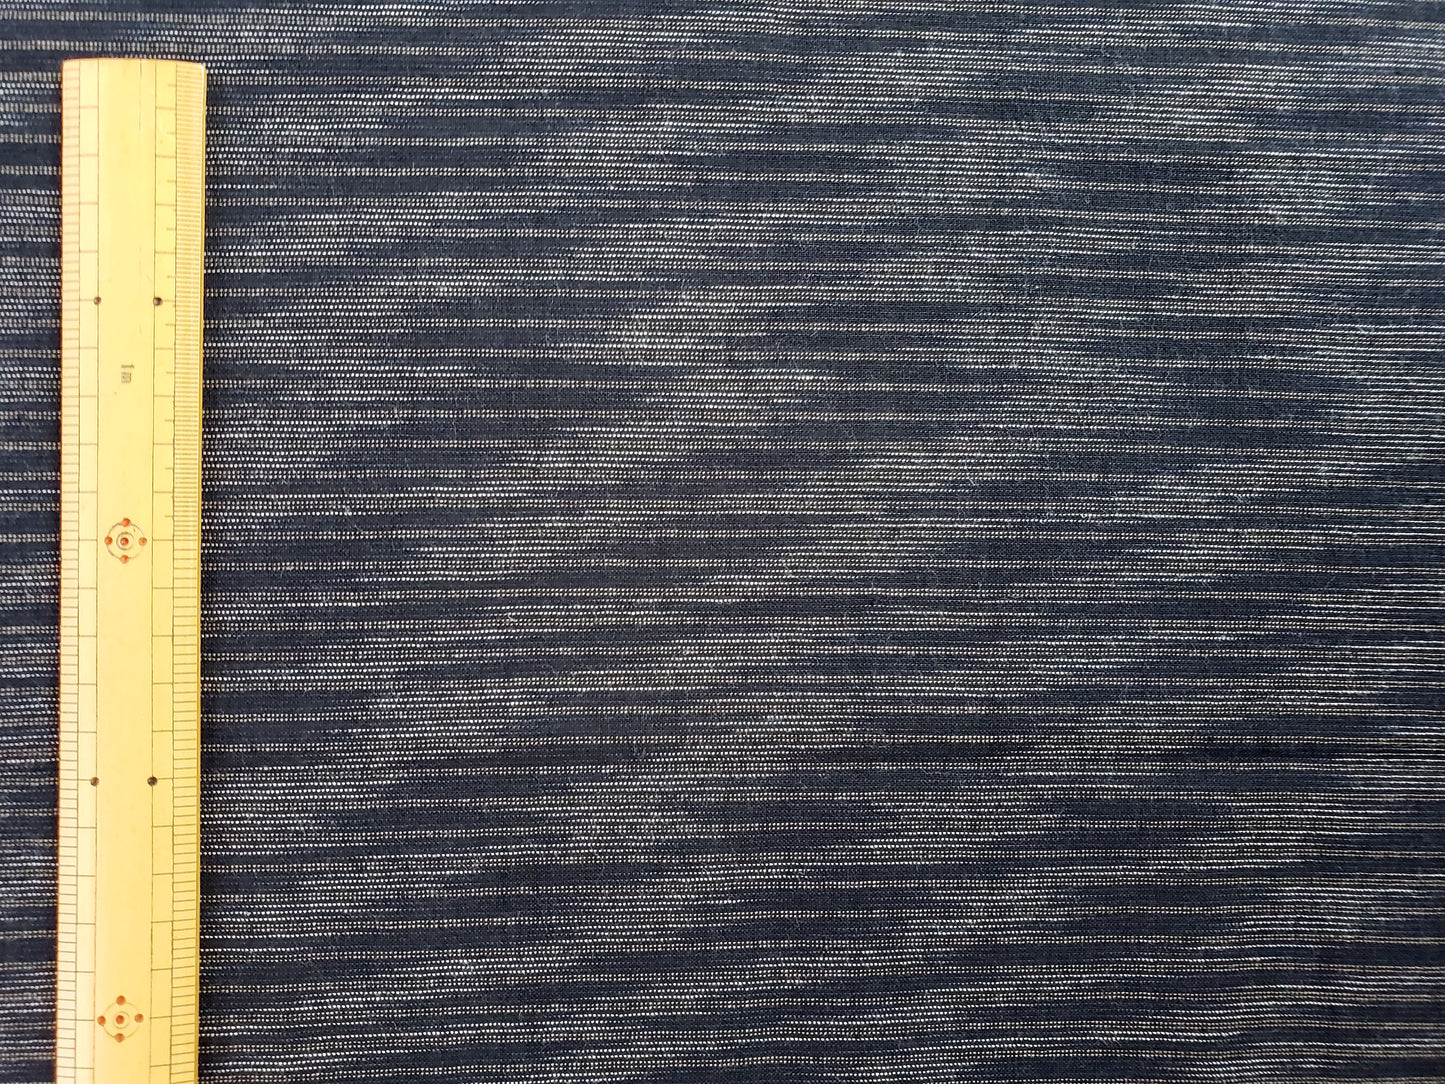 亀田縞　綿織物　普通地　#11　EFGHの4パターン